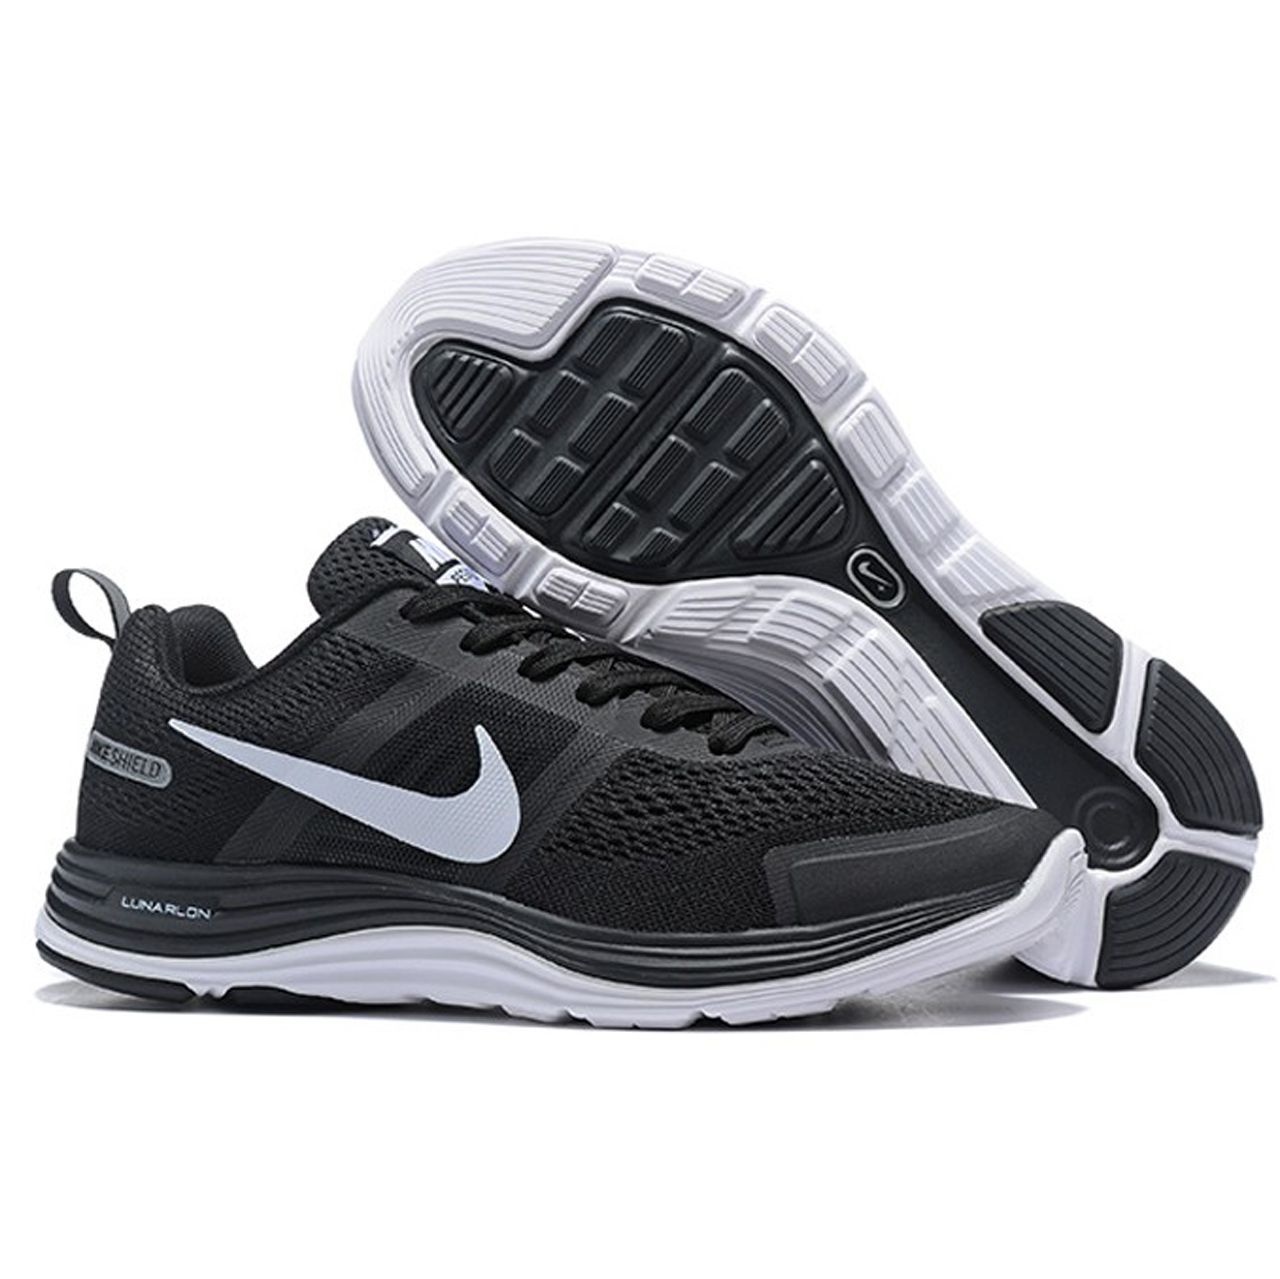  کفش ورزشی مردانه مخصوص دویدن و پیاده روی نایک مدل LUNARLON کد 803268001